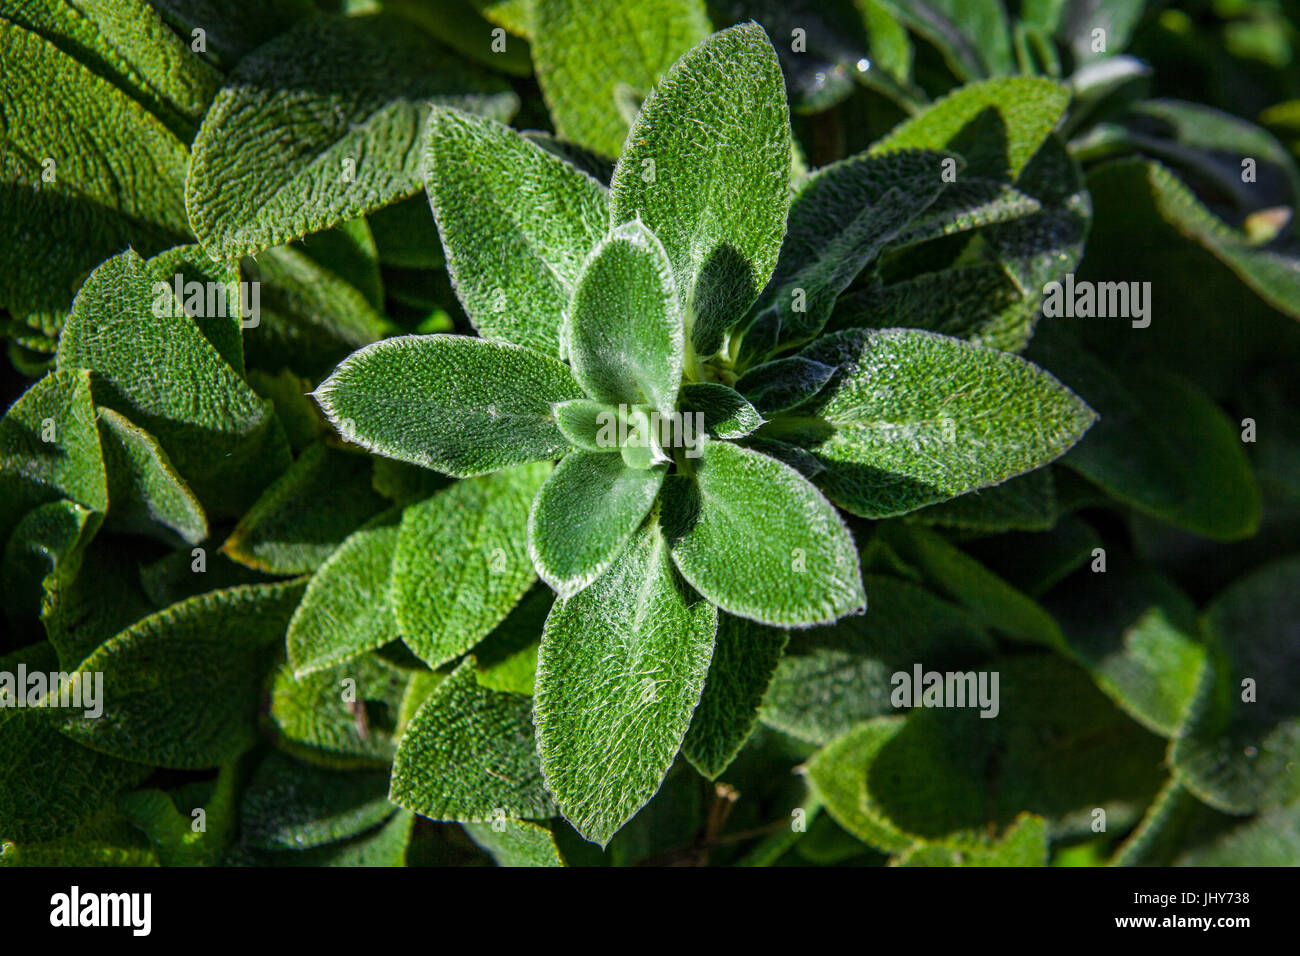 Lämmer Ohren Pflanze Closeup mit grünen Blättern, die aussehen wie bereift. Licht- und Schattenspiel. Geringe Schärfentiefe Stockfoto